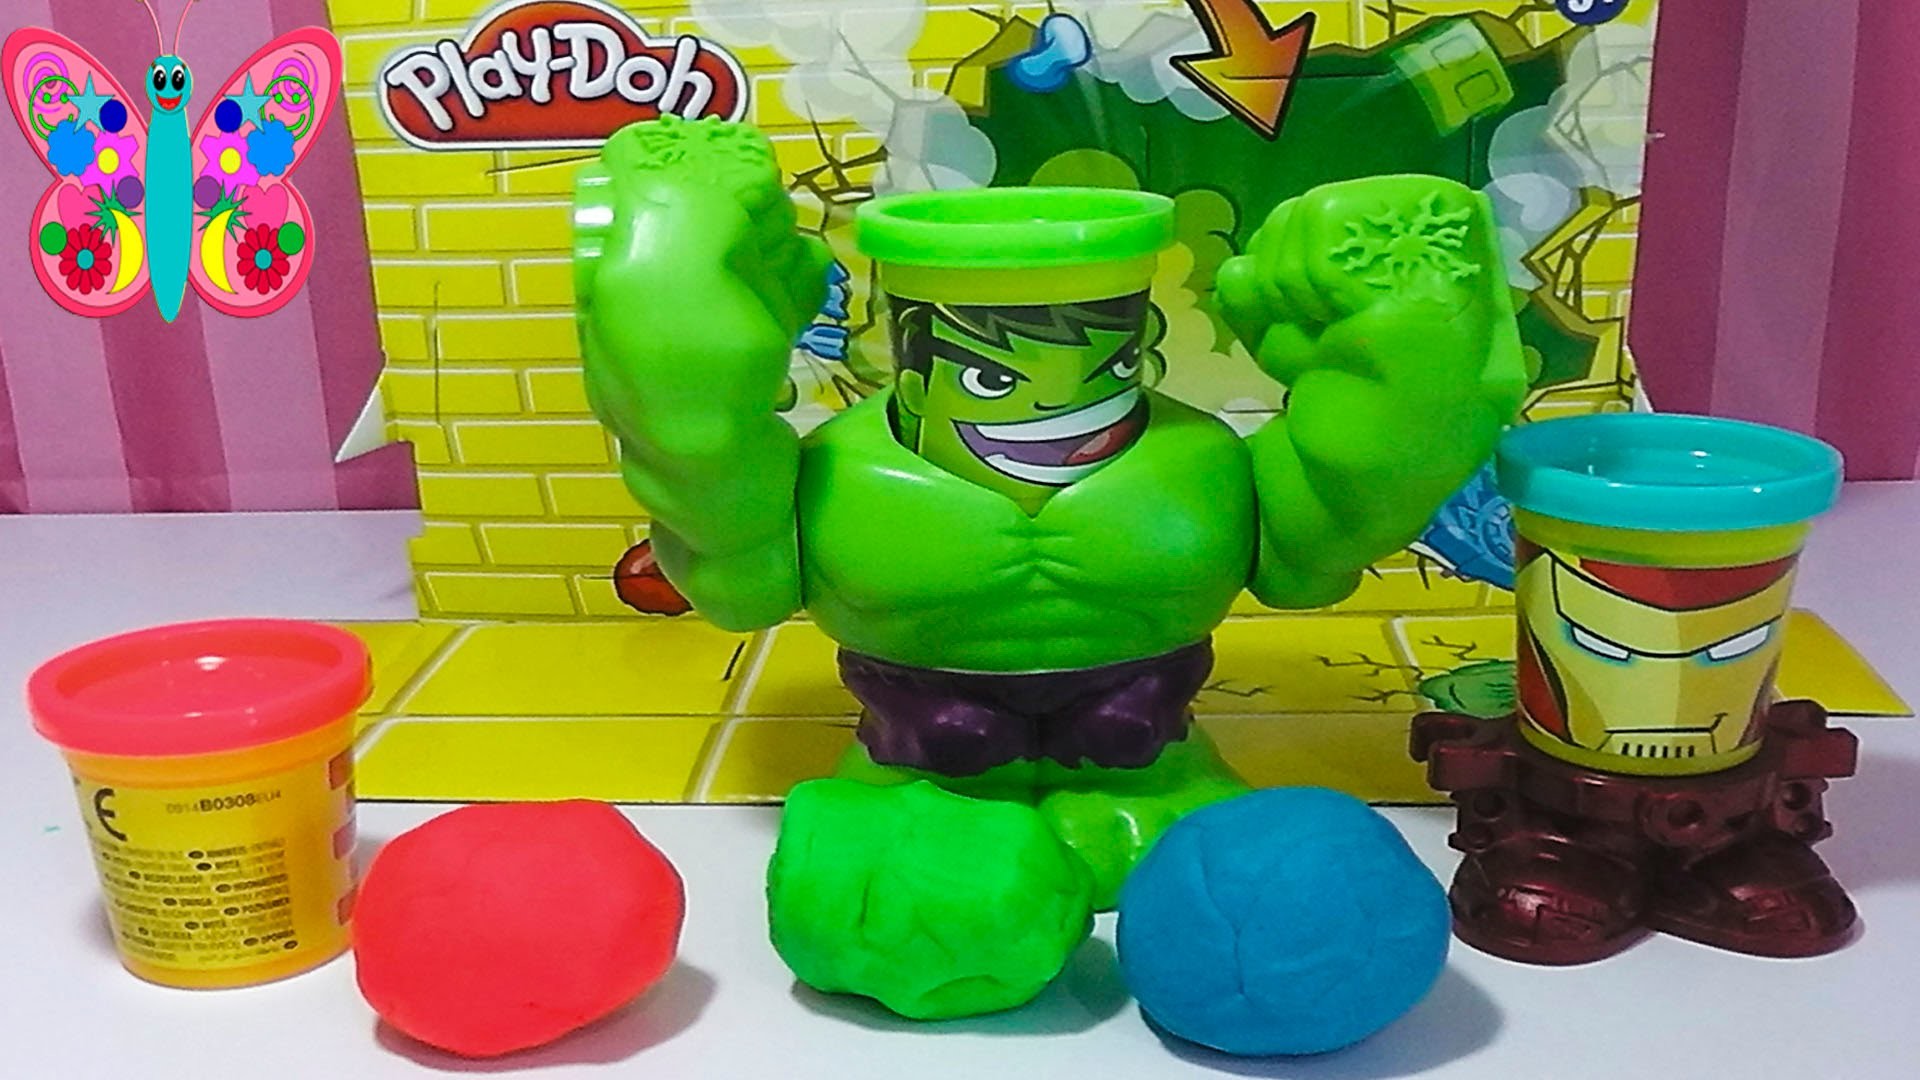 Play doh en español Hulk aplasta plasti juguete de plastilina con iron man y hulk de Marvel 2015